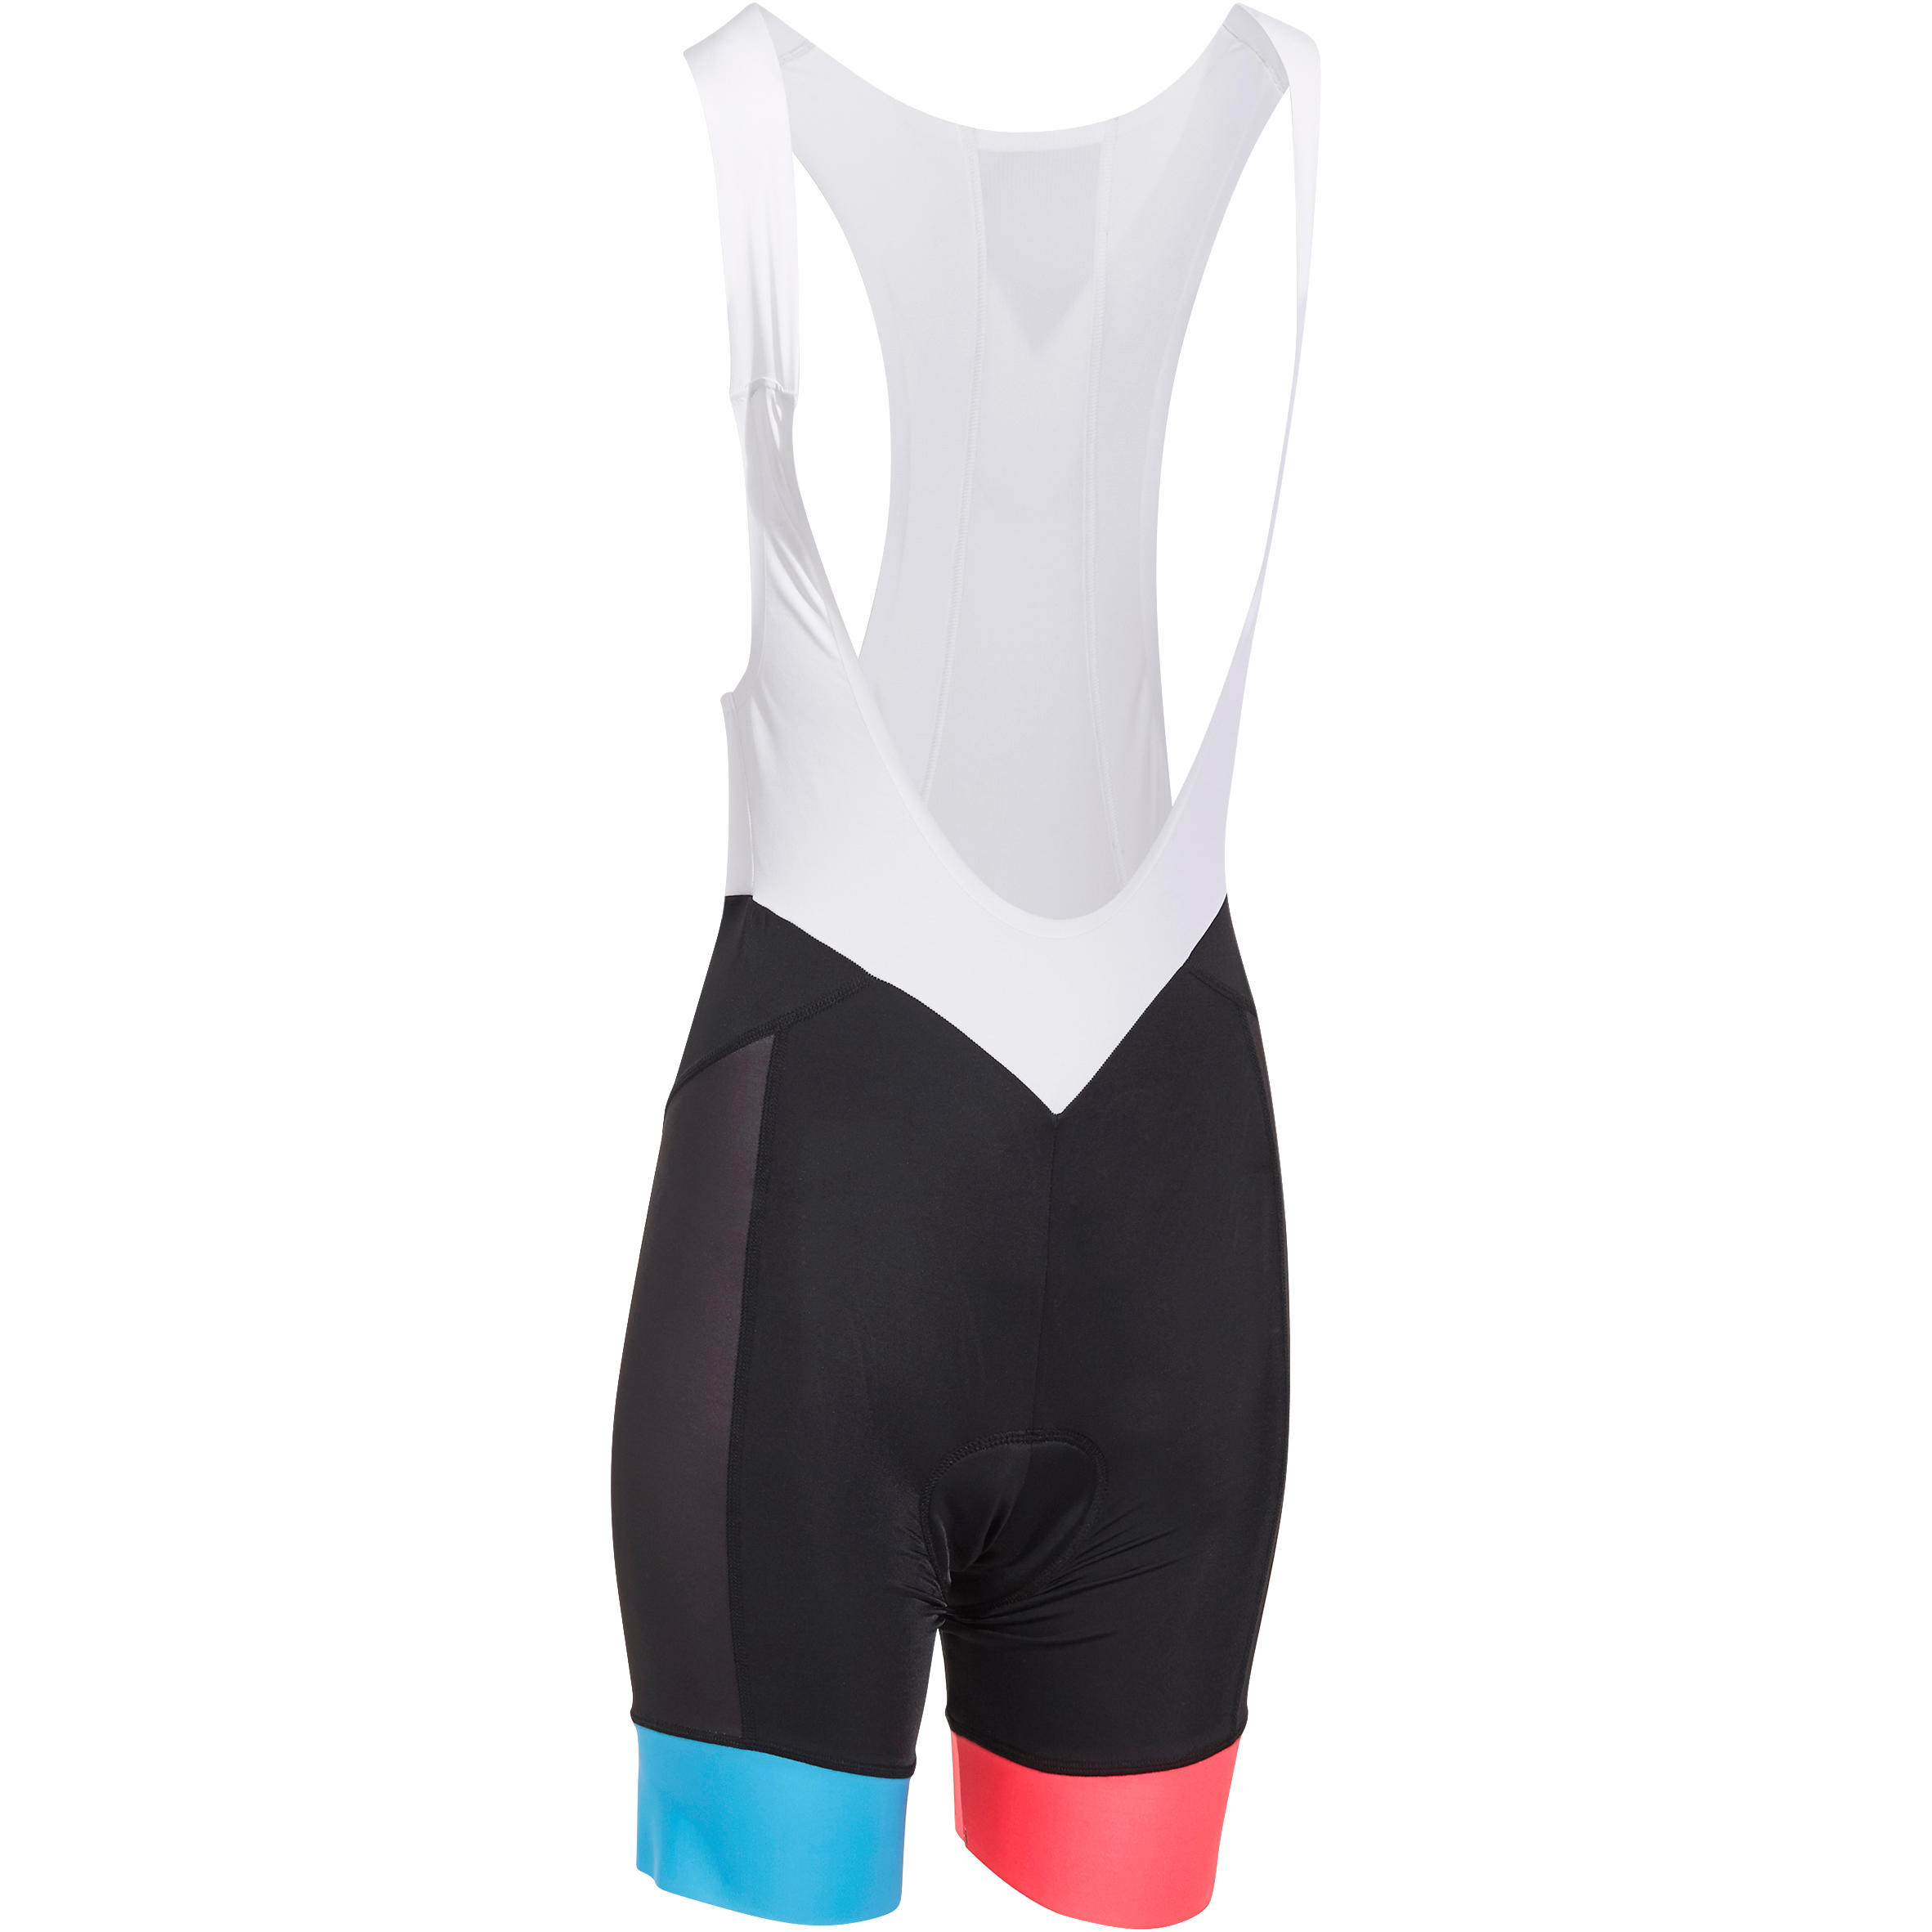 VAN RYSEL 900 Women's Cycling Bib Shorts - Black/Blue/Pink